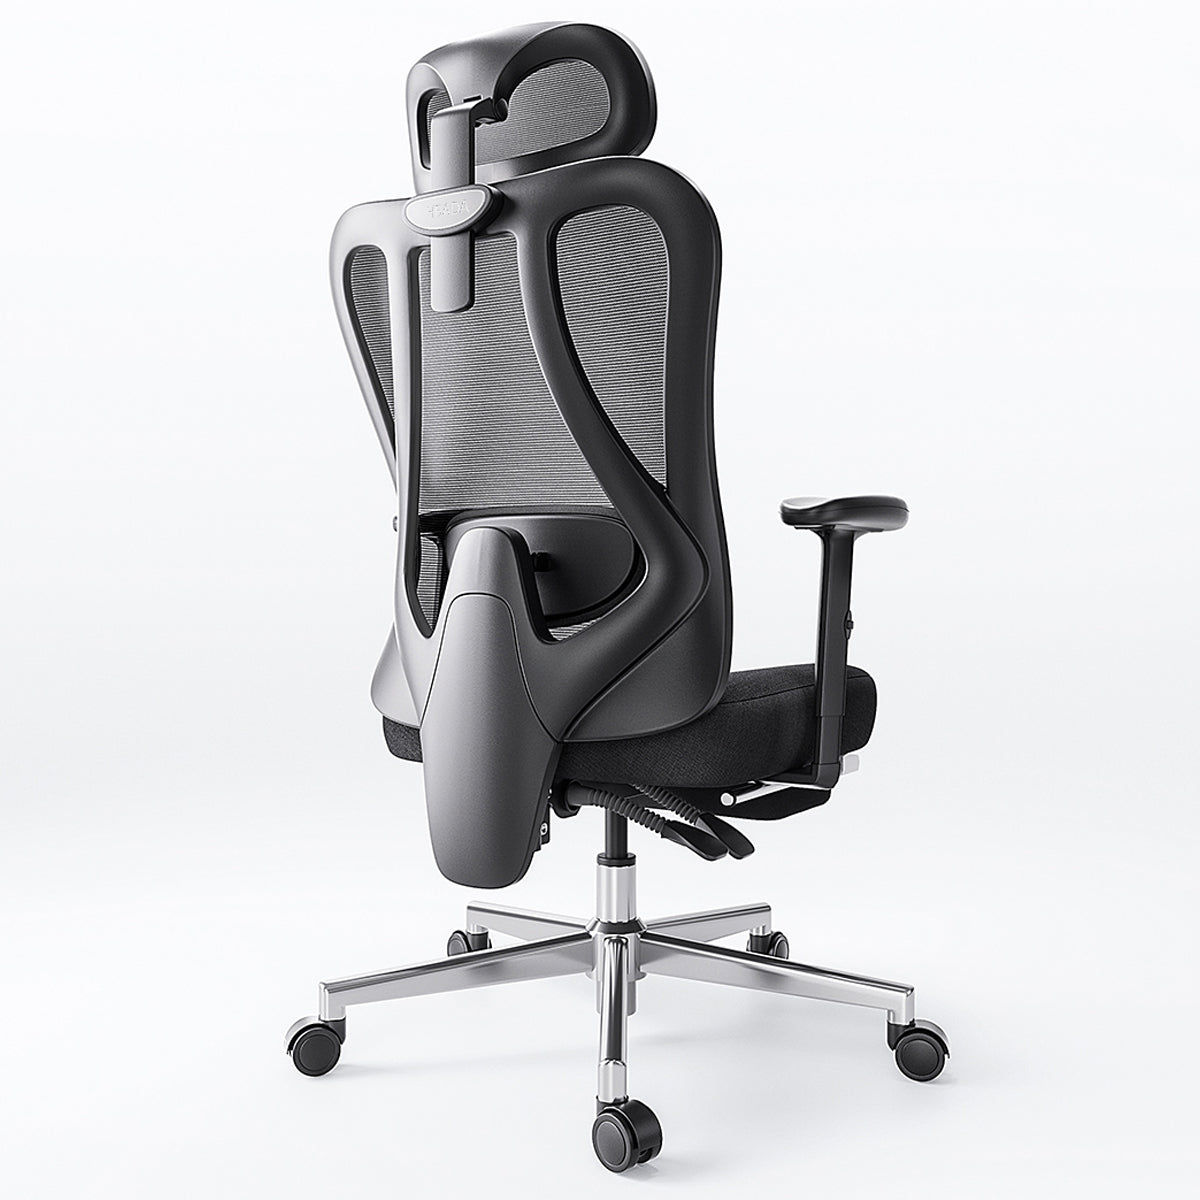 HBADA Ergonomic Office Chair,P3 Series